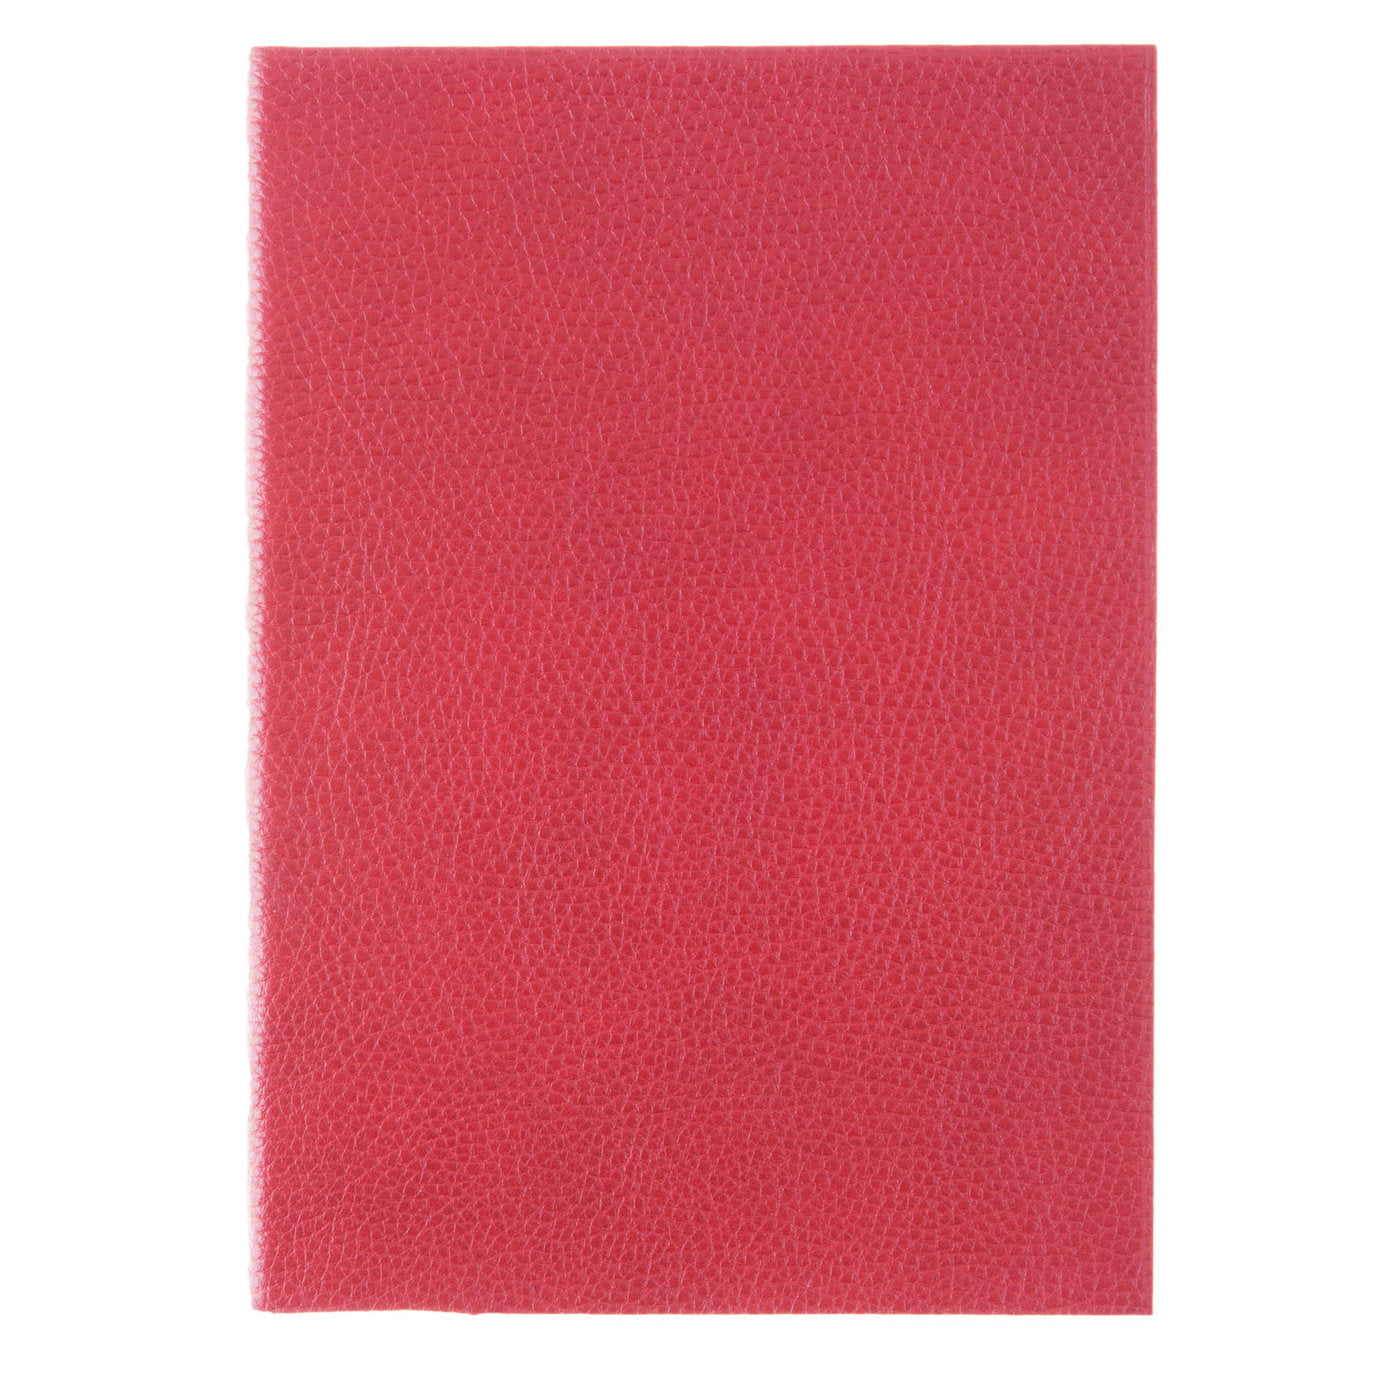 Notizbuch aus rotem Leder - Alternative Ansicht 1